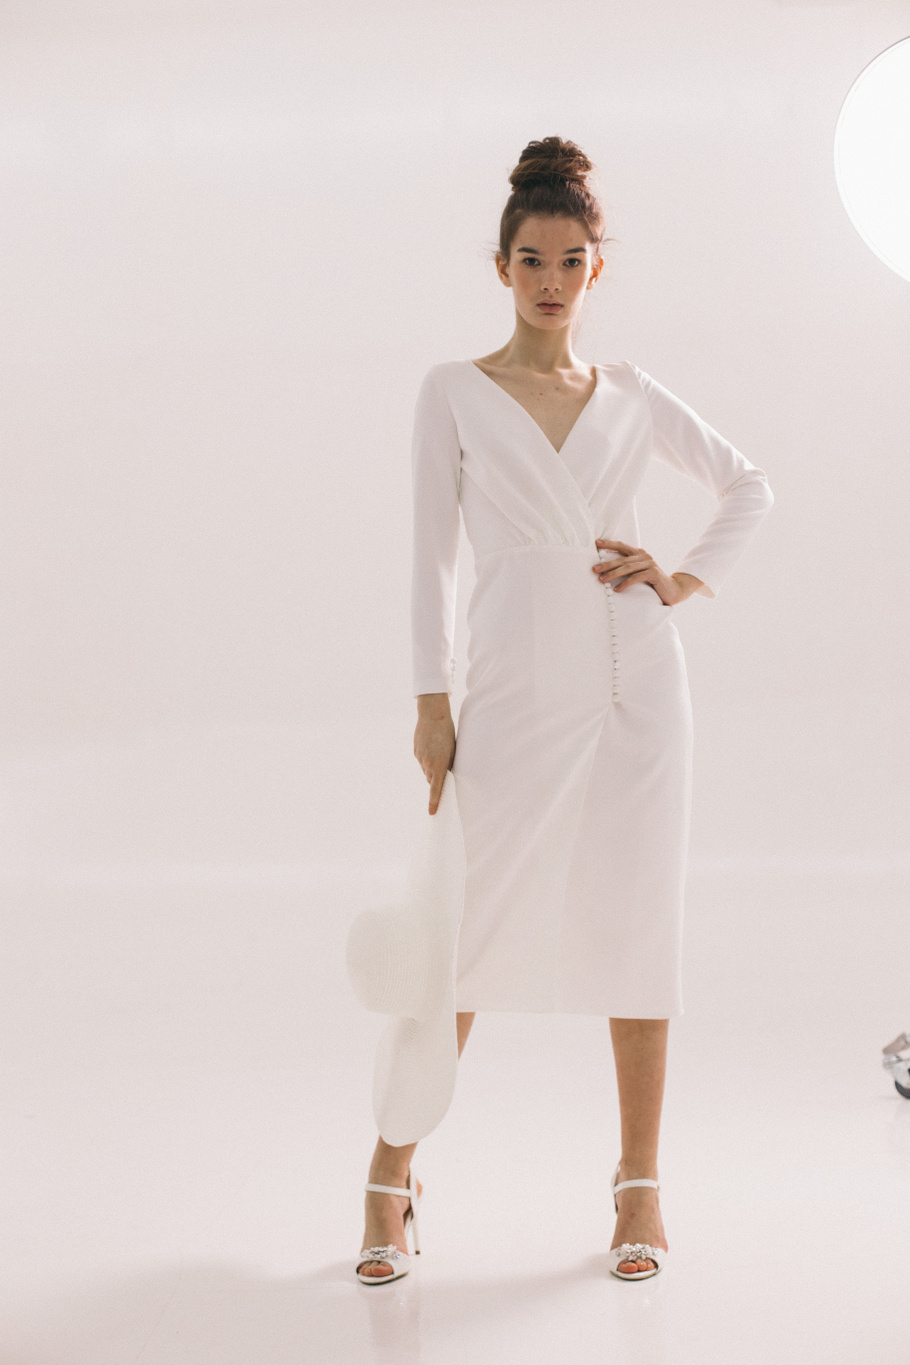 Купить свадебное платье «Джейн» Ателье Лейс Дизайн из коллекции 2021 года в салоне «Мэри Трюфель»